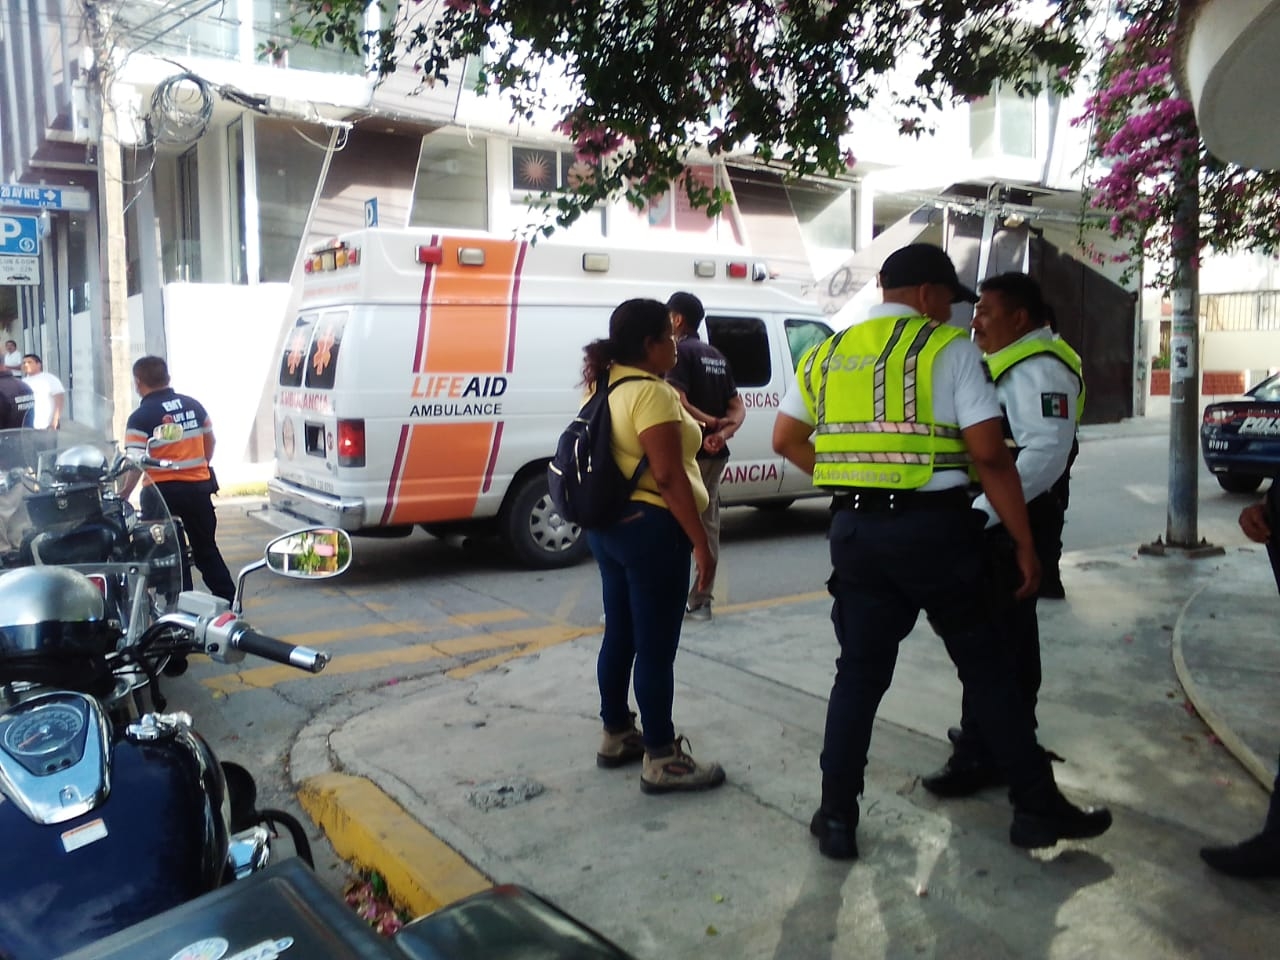 La turista fue llevada a un hospital privado para su atención médica tras ser atropellada por una unidad de taxi en Playa del Carmen